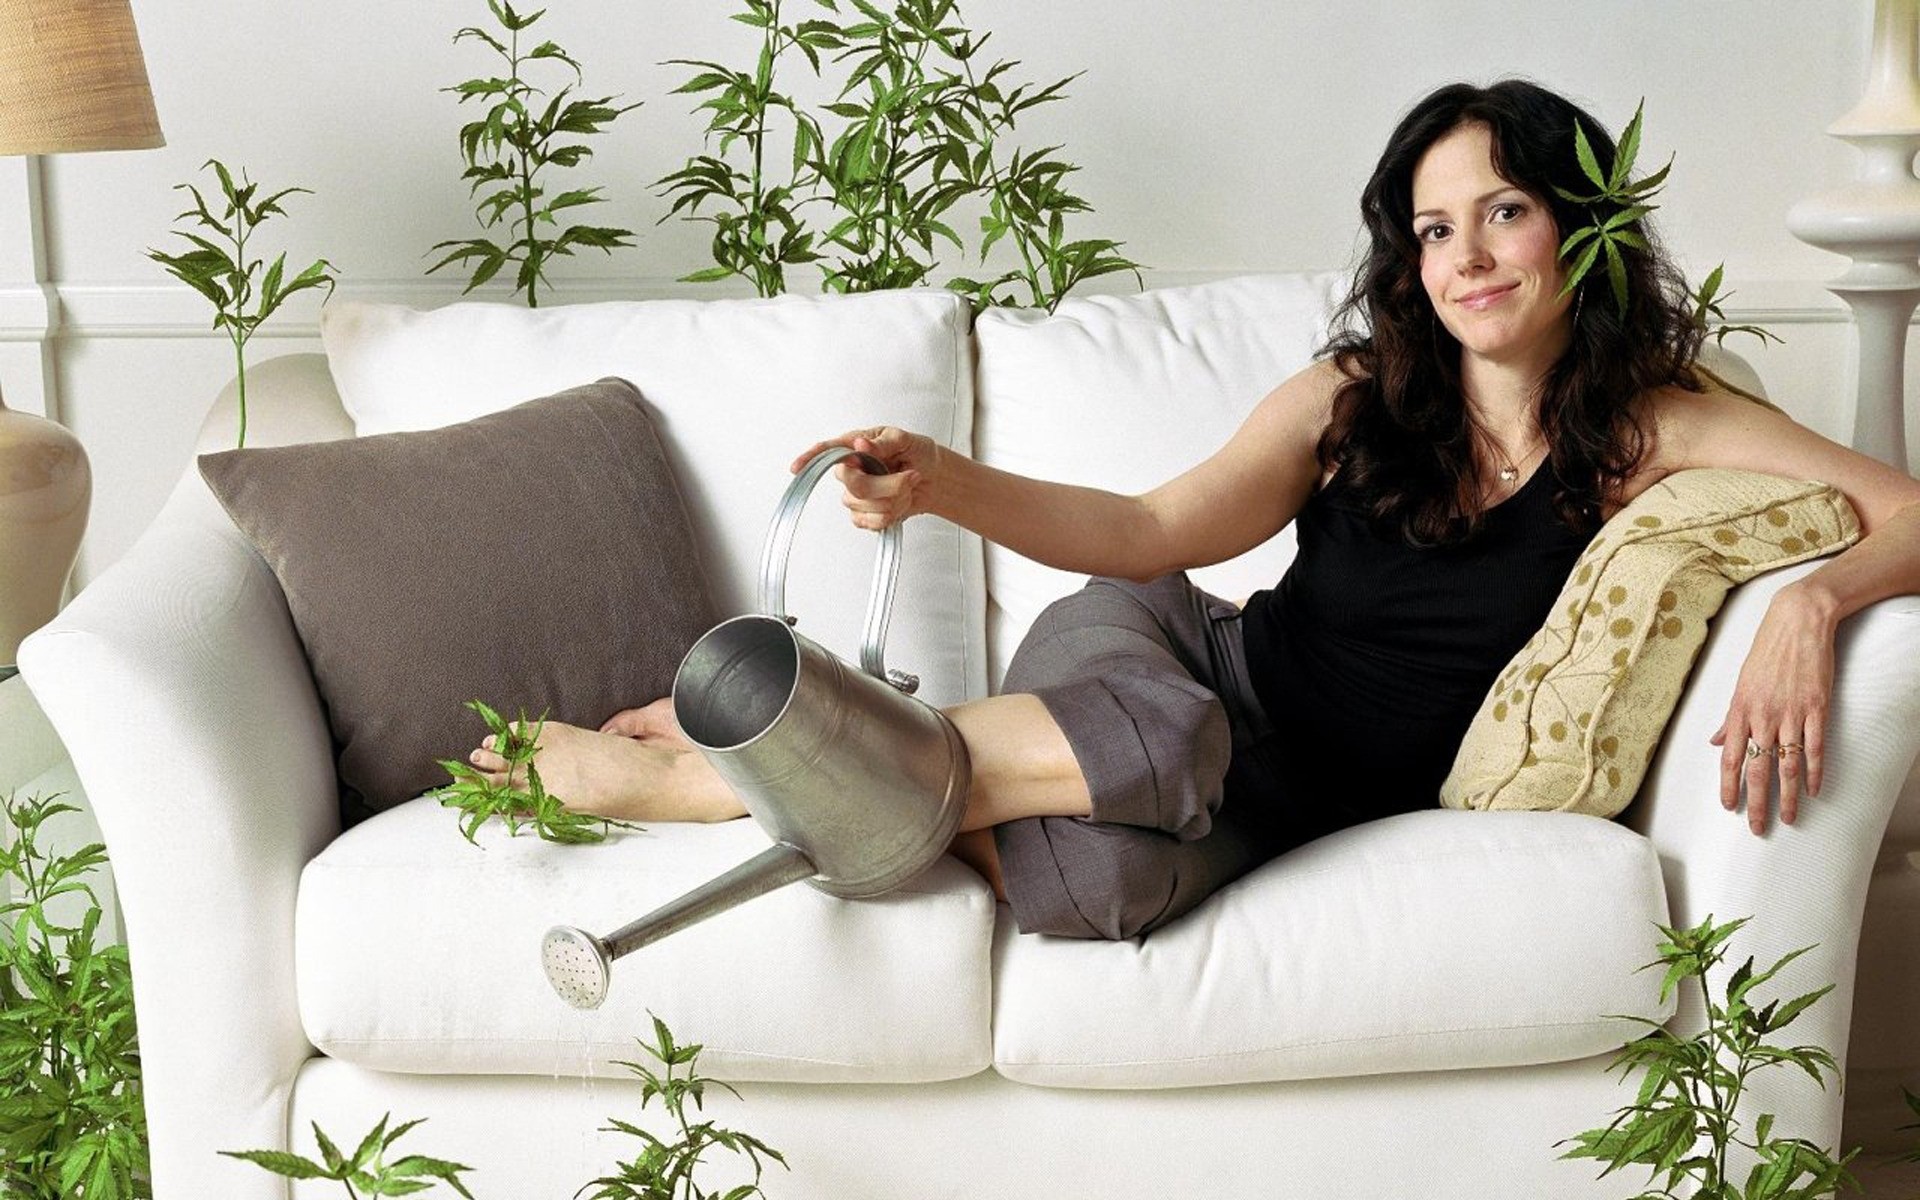 телесериалы диван в помещении женщина релаксация мебель семья номер взрослый сидеть место образ жизни выражение лица девушка отдых счастье удовольствия марихуаны комедия действие зеленый